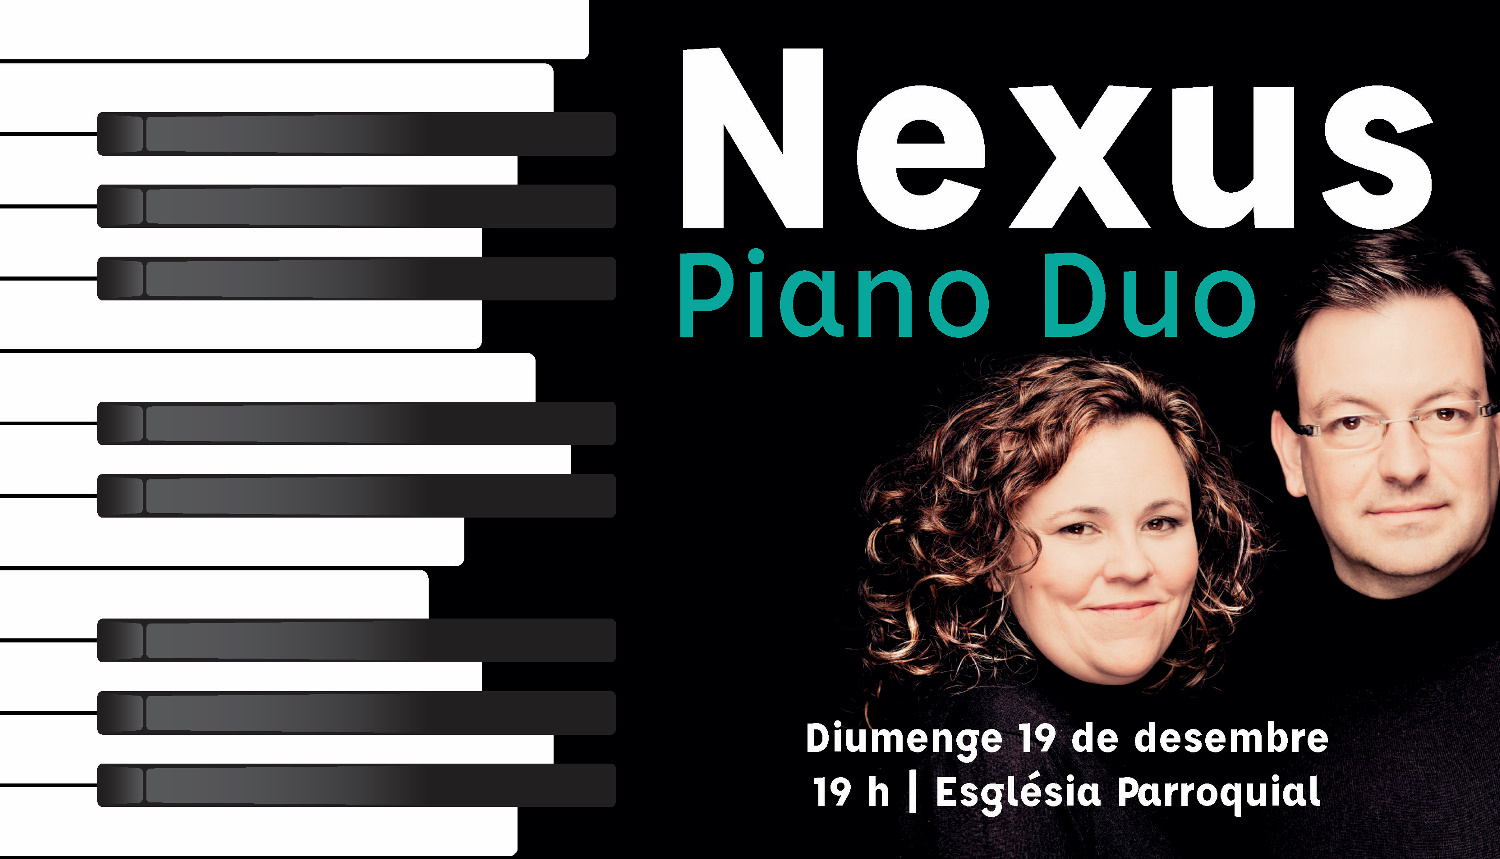 Concert de Nexus Piano Duo el 19 de desembre